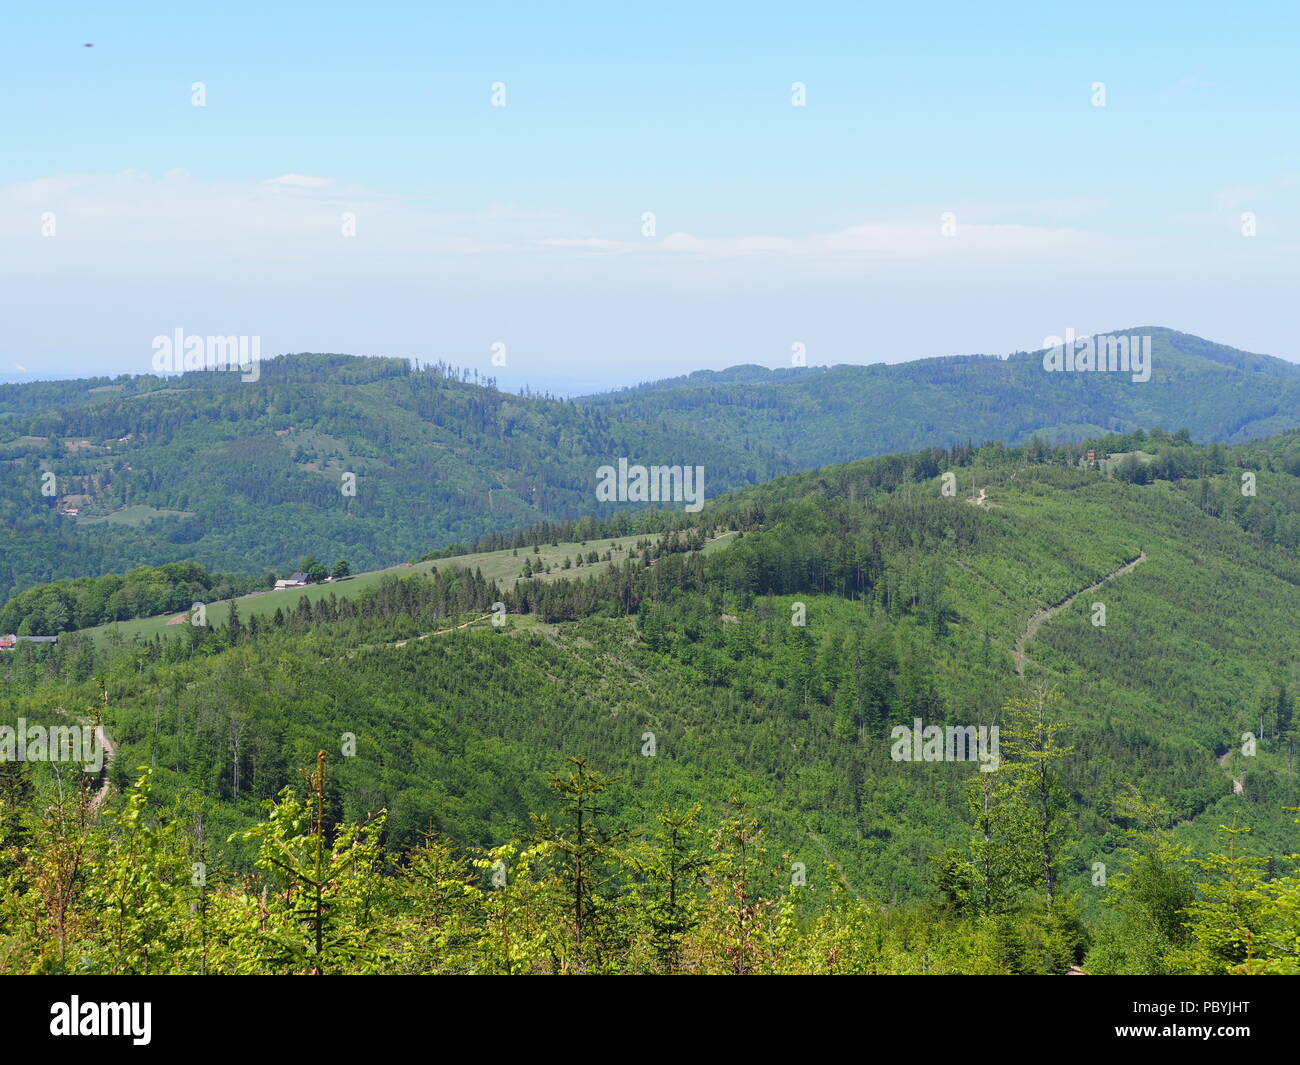 Wundervolle Salmopol Pass in der Nähe von Mount Kotarz in Schlesischen Beskiden Reihe Landschaften in der Nähe von europäischen Stadt Szczyrk in Polen mit klaren blauen Himmel Ich Stockfoto